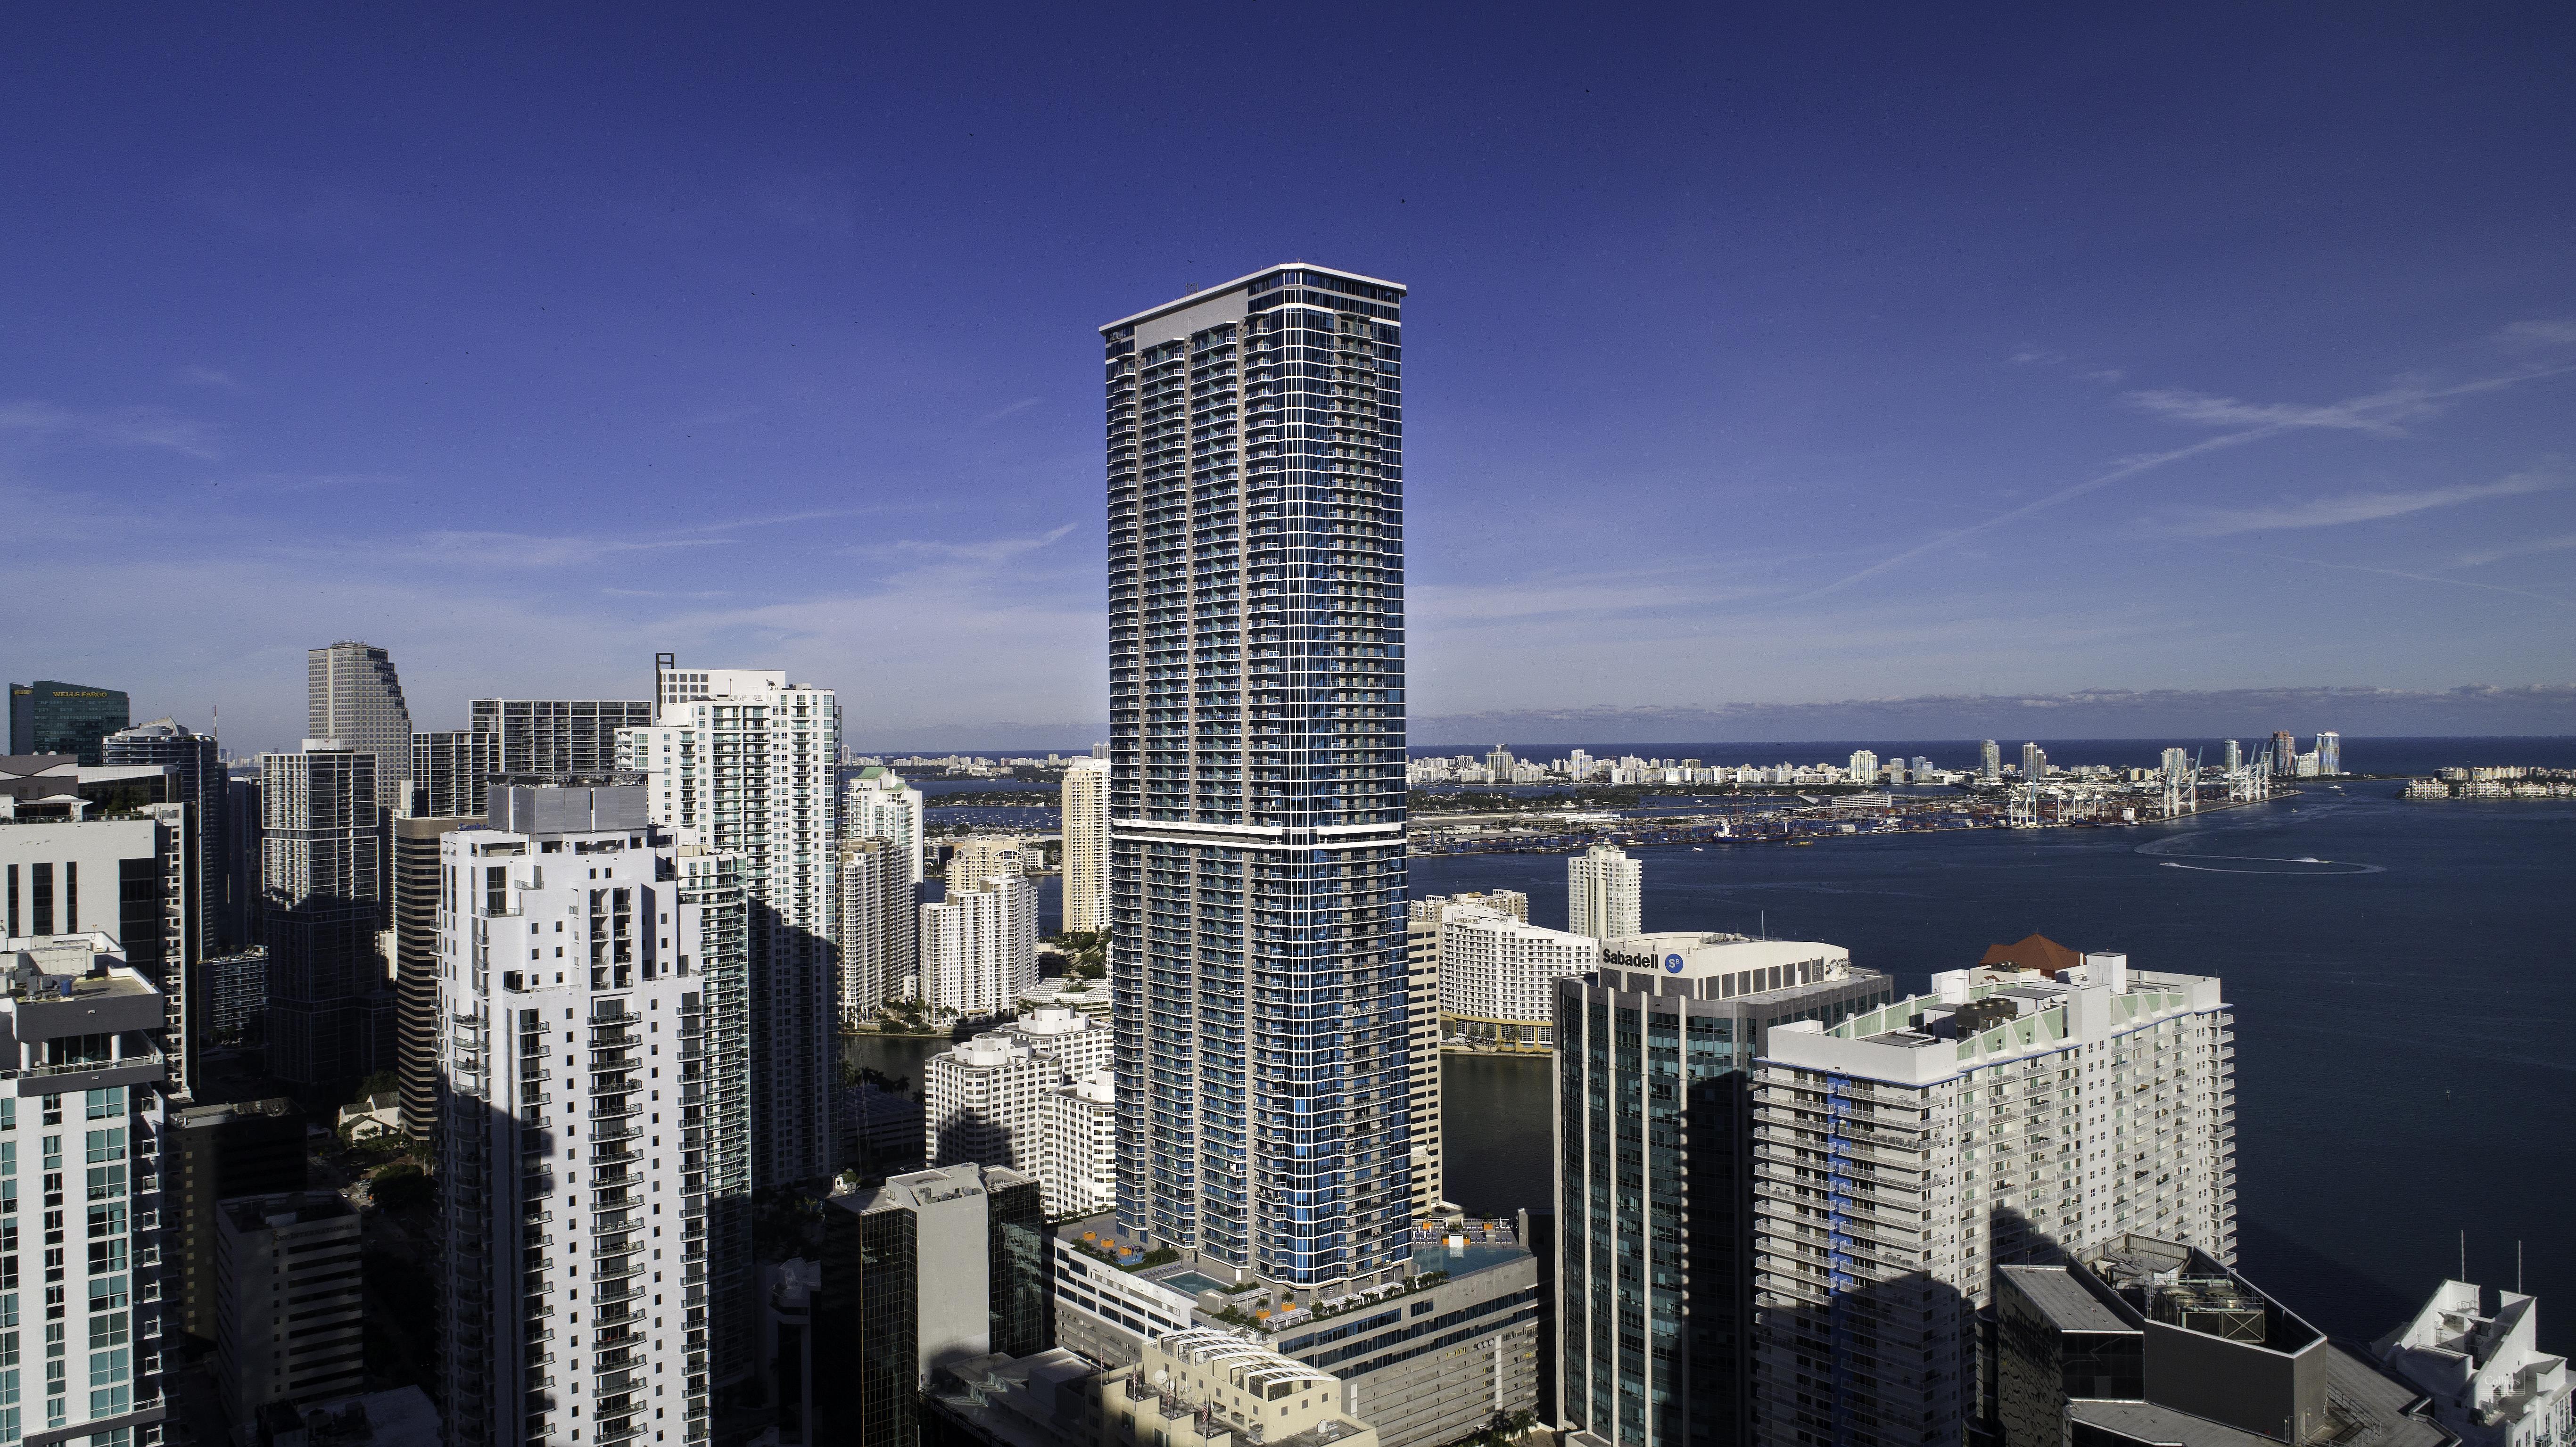 Miami's latest lavish skyscraper will be courtesy of Dolce&Gabbana